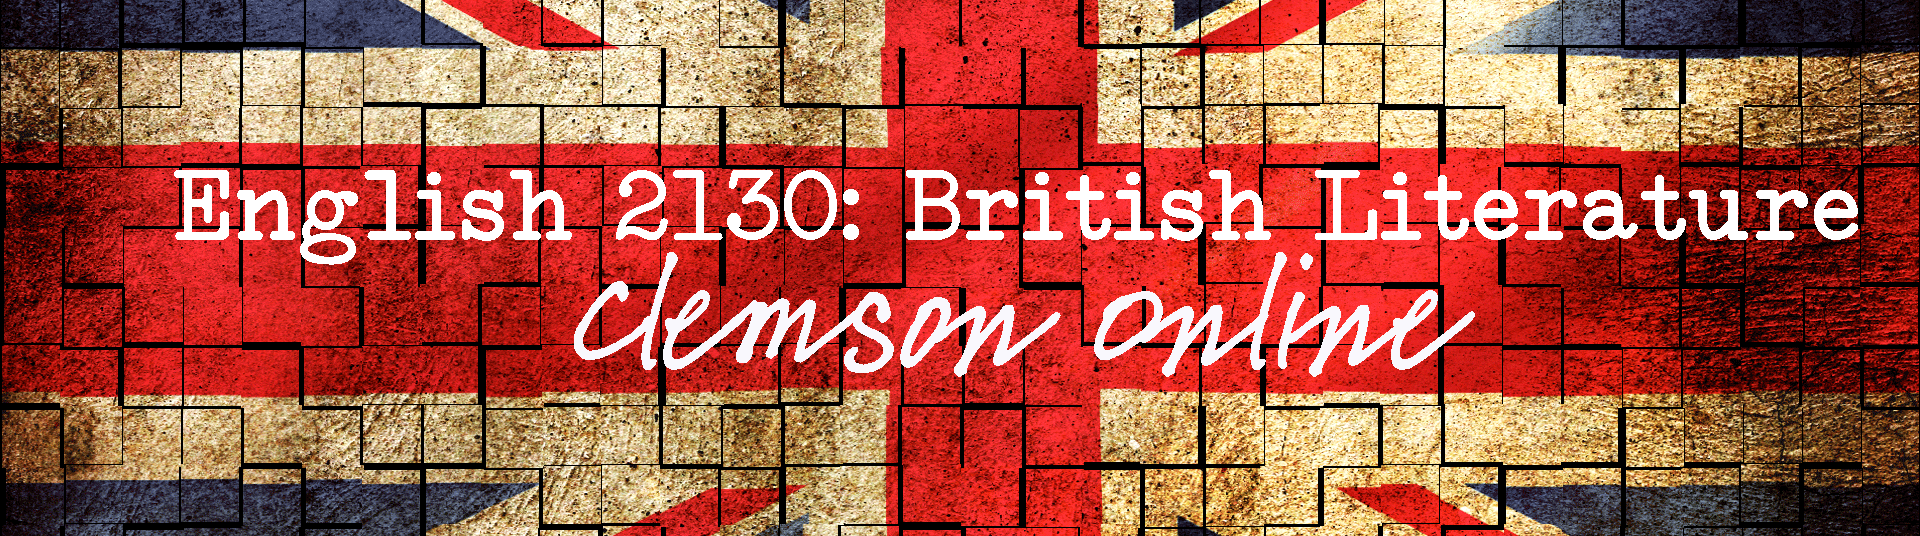 English 2130: British Literature (Clemson Online)